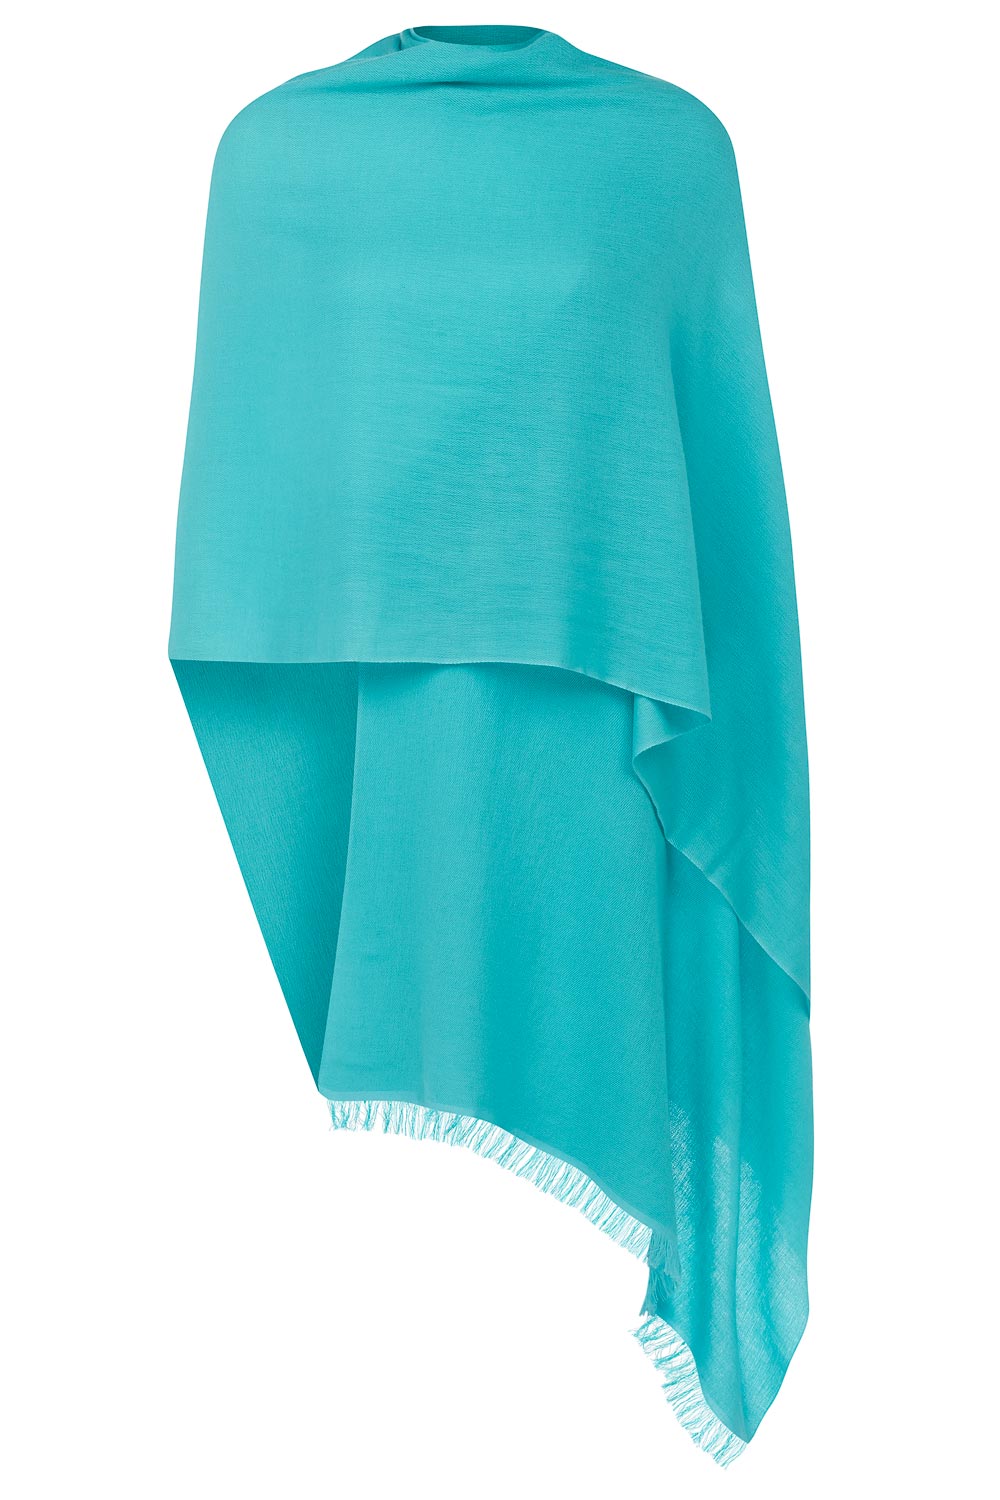 turquoise cashmere pashmina azjmugm